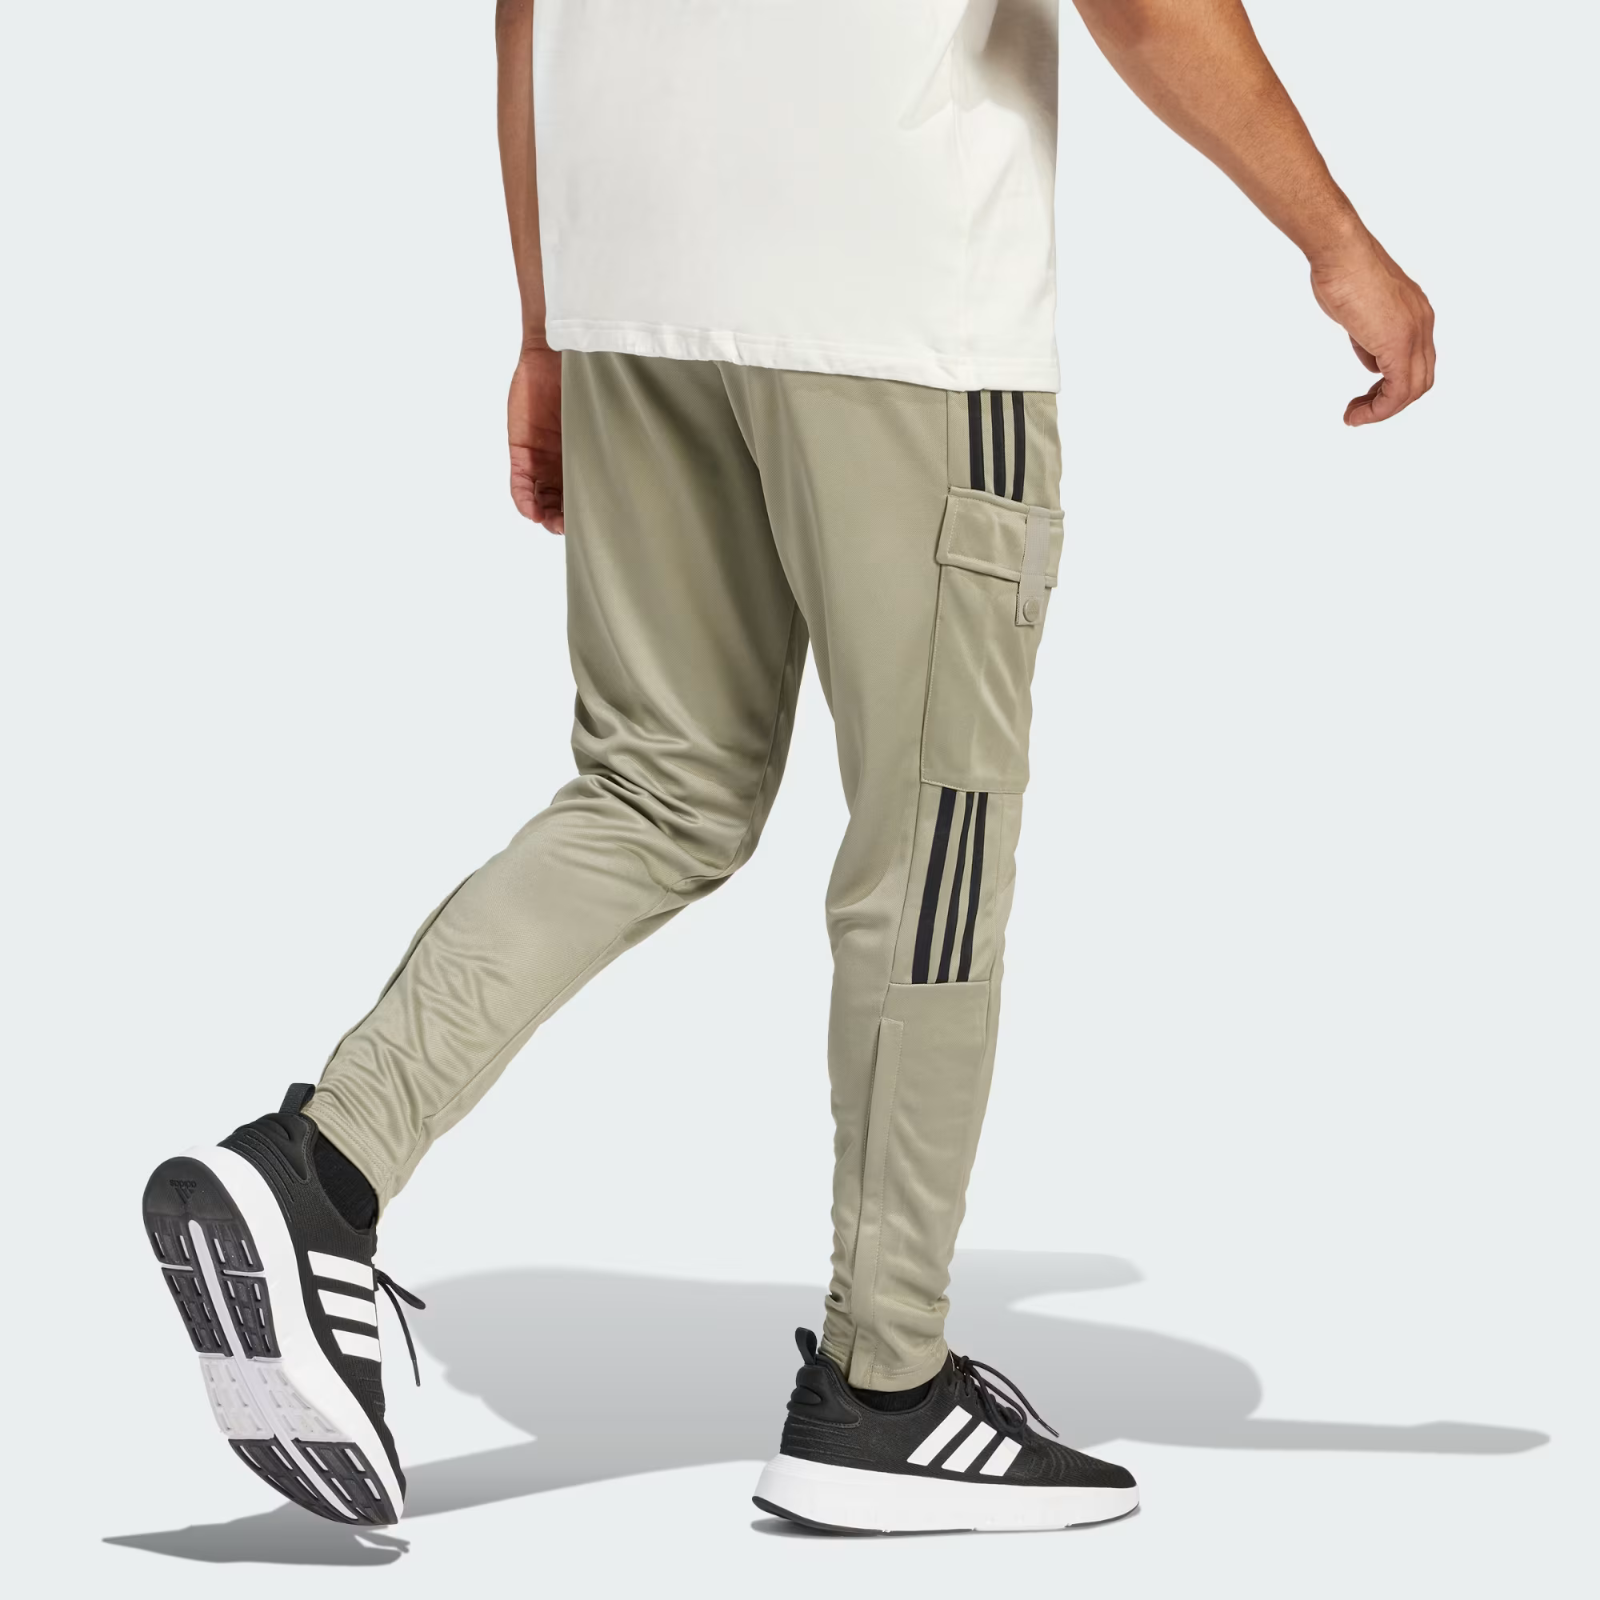 Adidas Uomo Tiro items Pantaloni 50 similar and Cargo Comfort